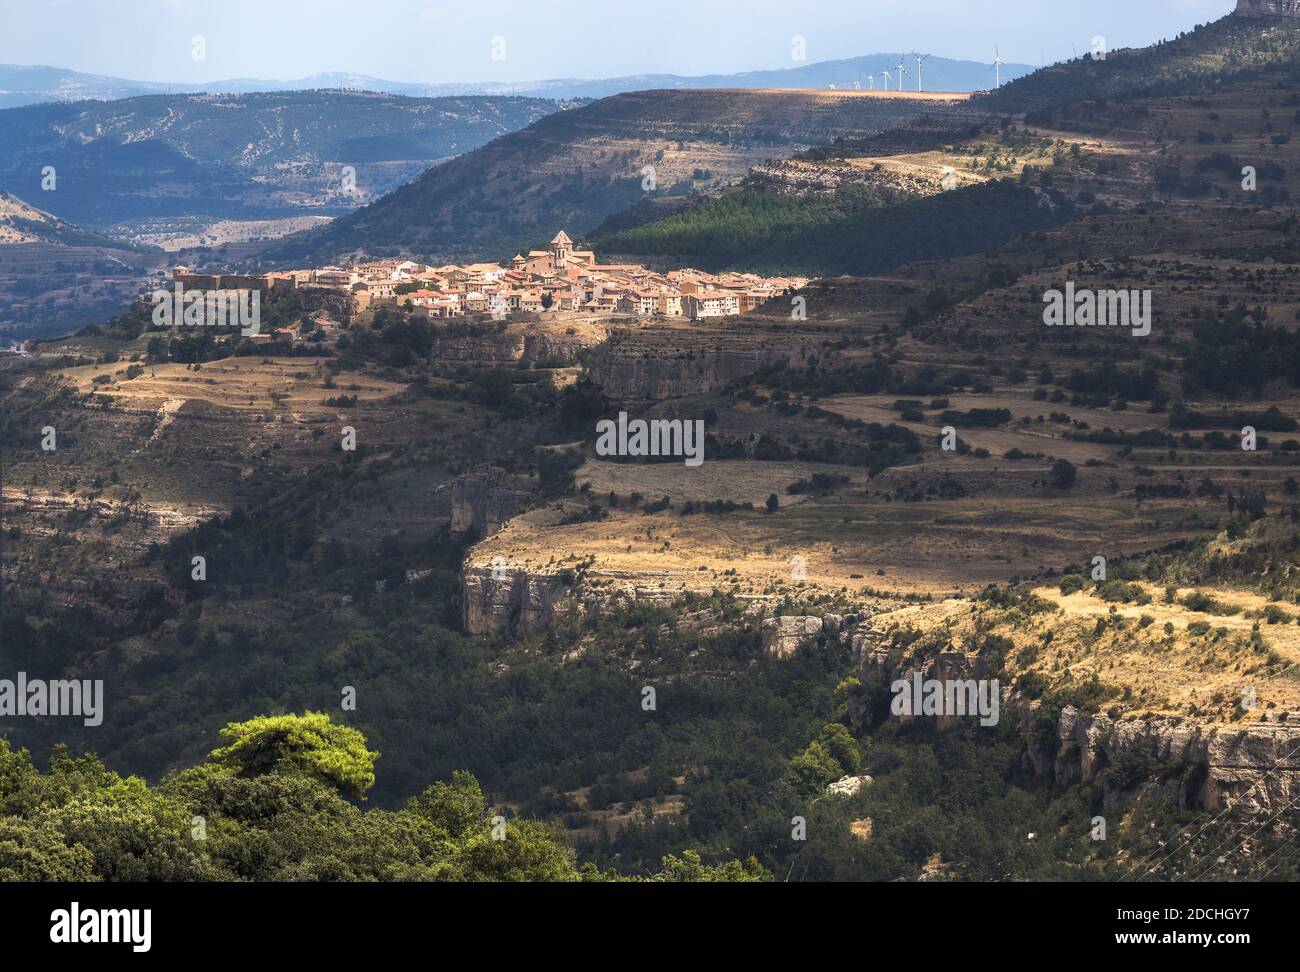 Village of Cantavieja in Maestrazgo, Teruel, Spain Stock Photo